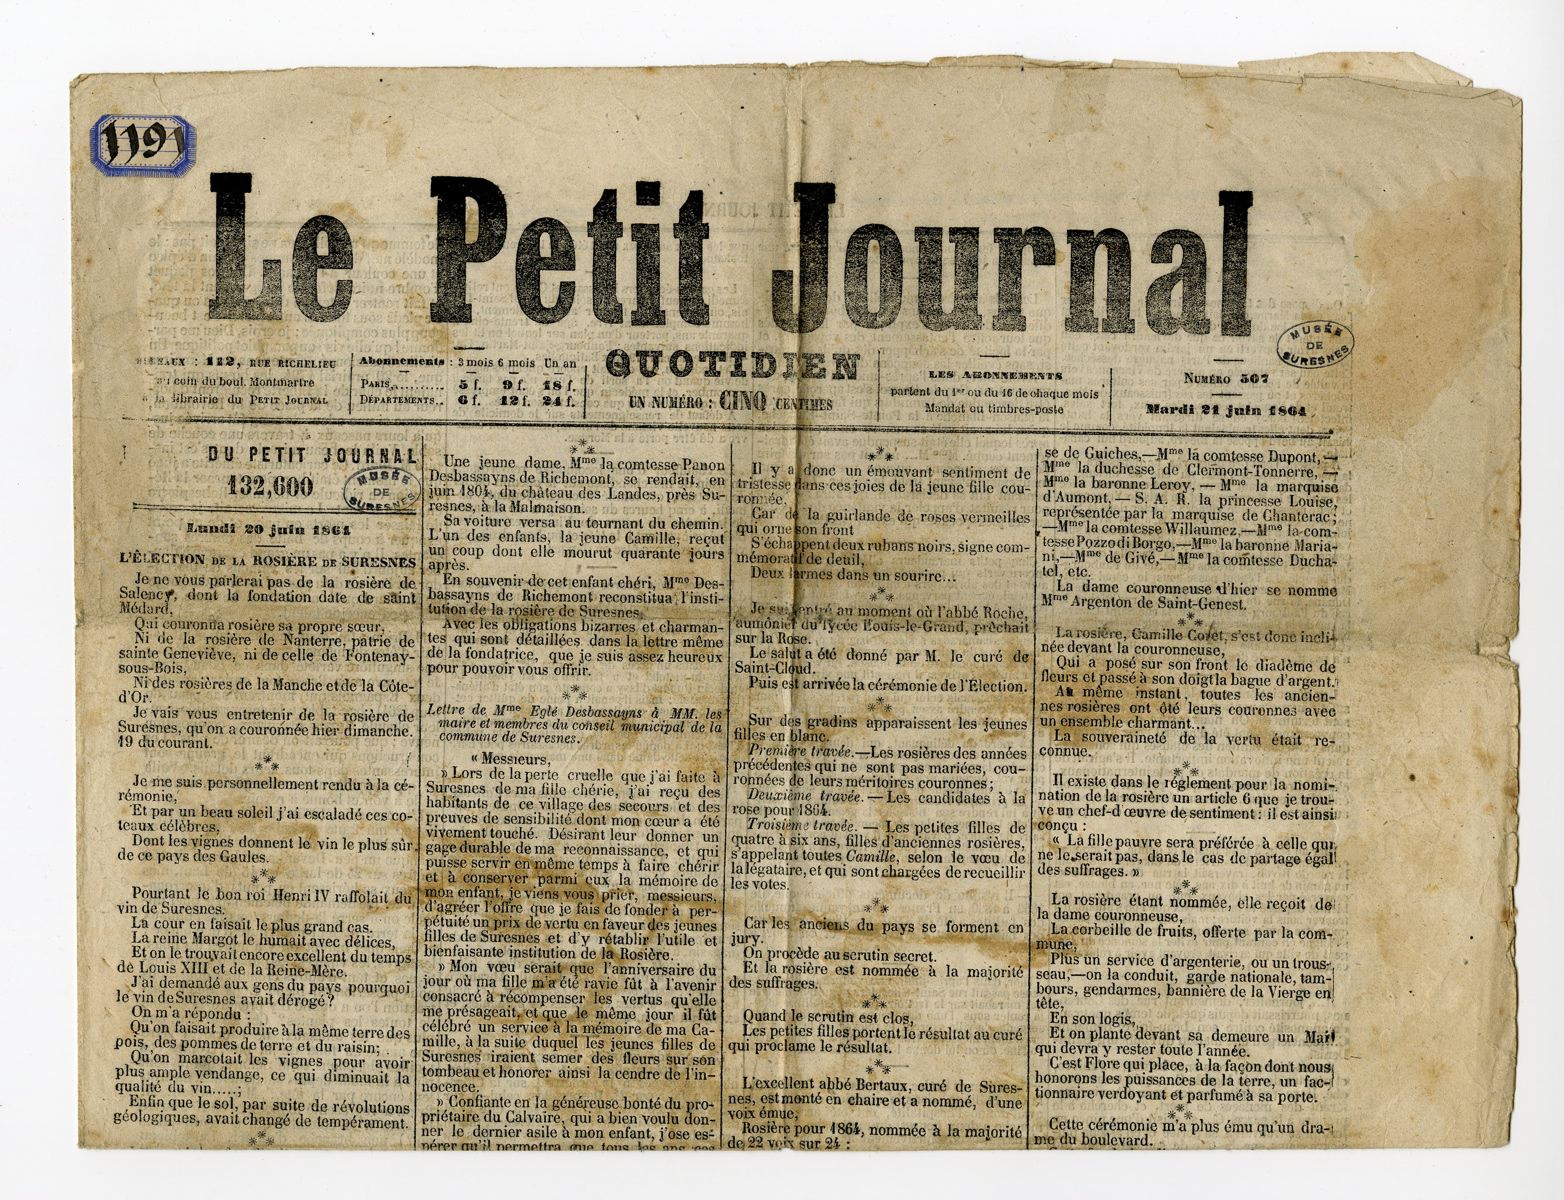 Election de la rosière de Suresnes dans "Le Petit Journal"